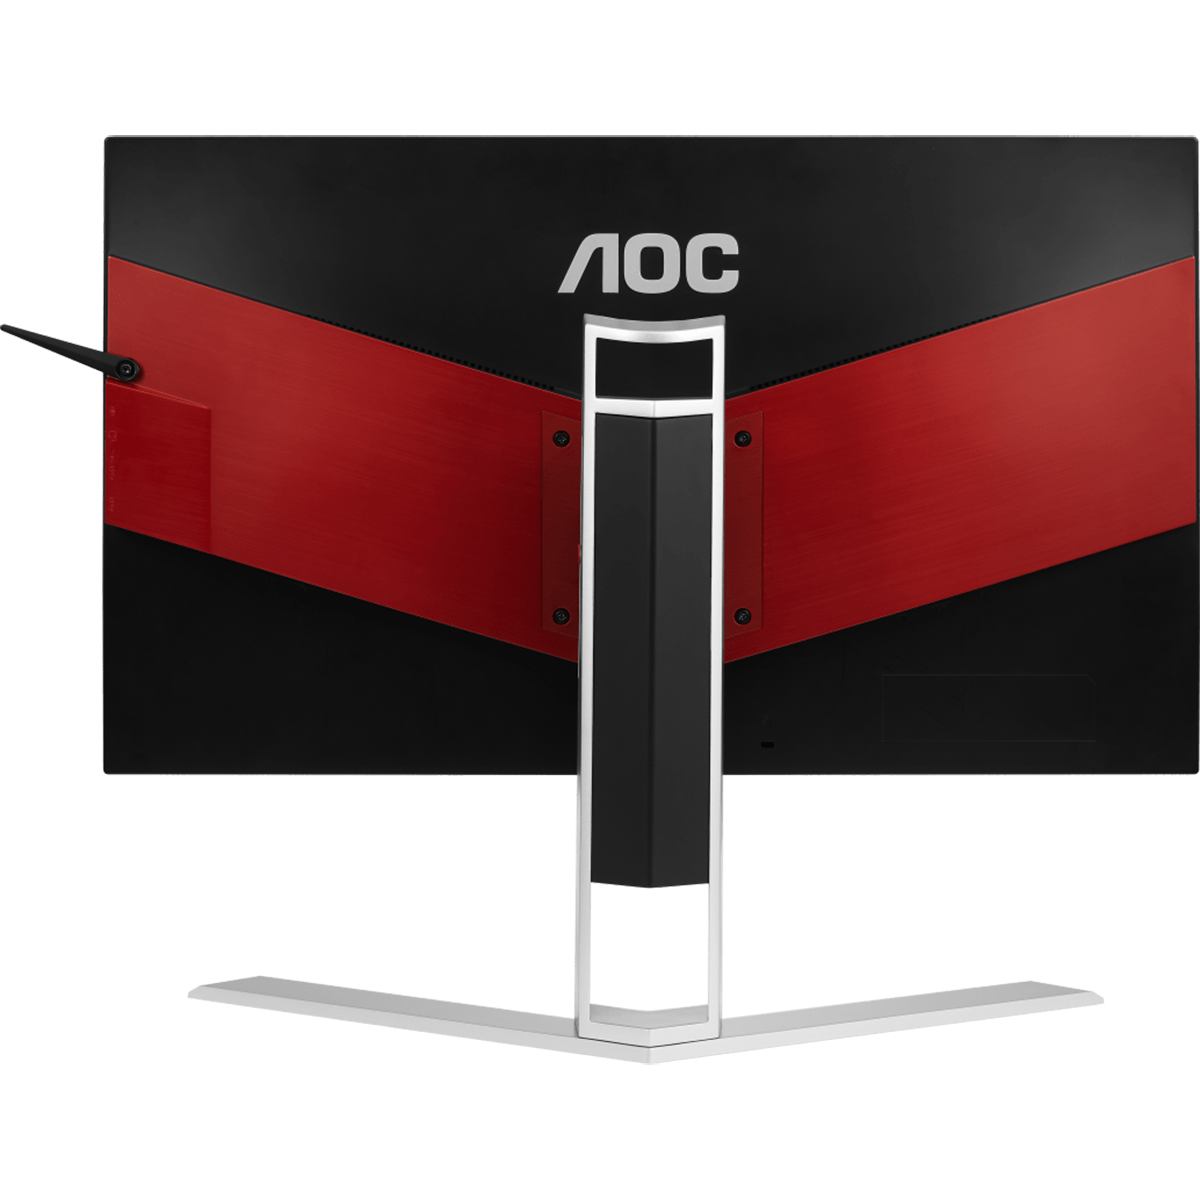 Игровой монитор AOC AGON AG251FZ в официальном интернет магазине AGONBYAOC.ru (AOC Россия)